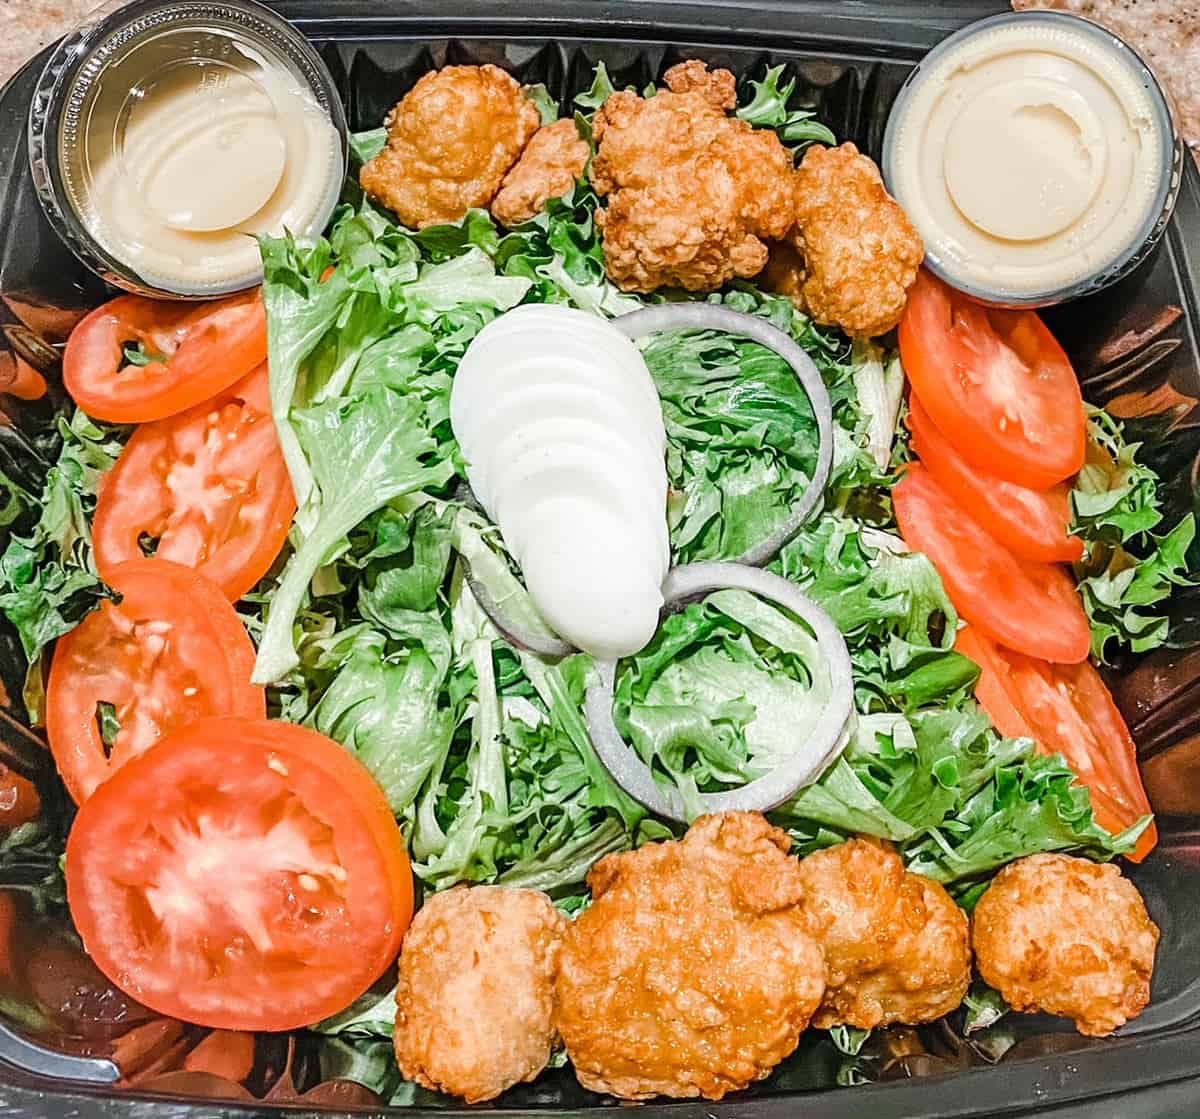 Columbos salad